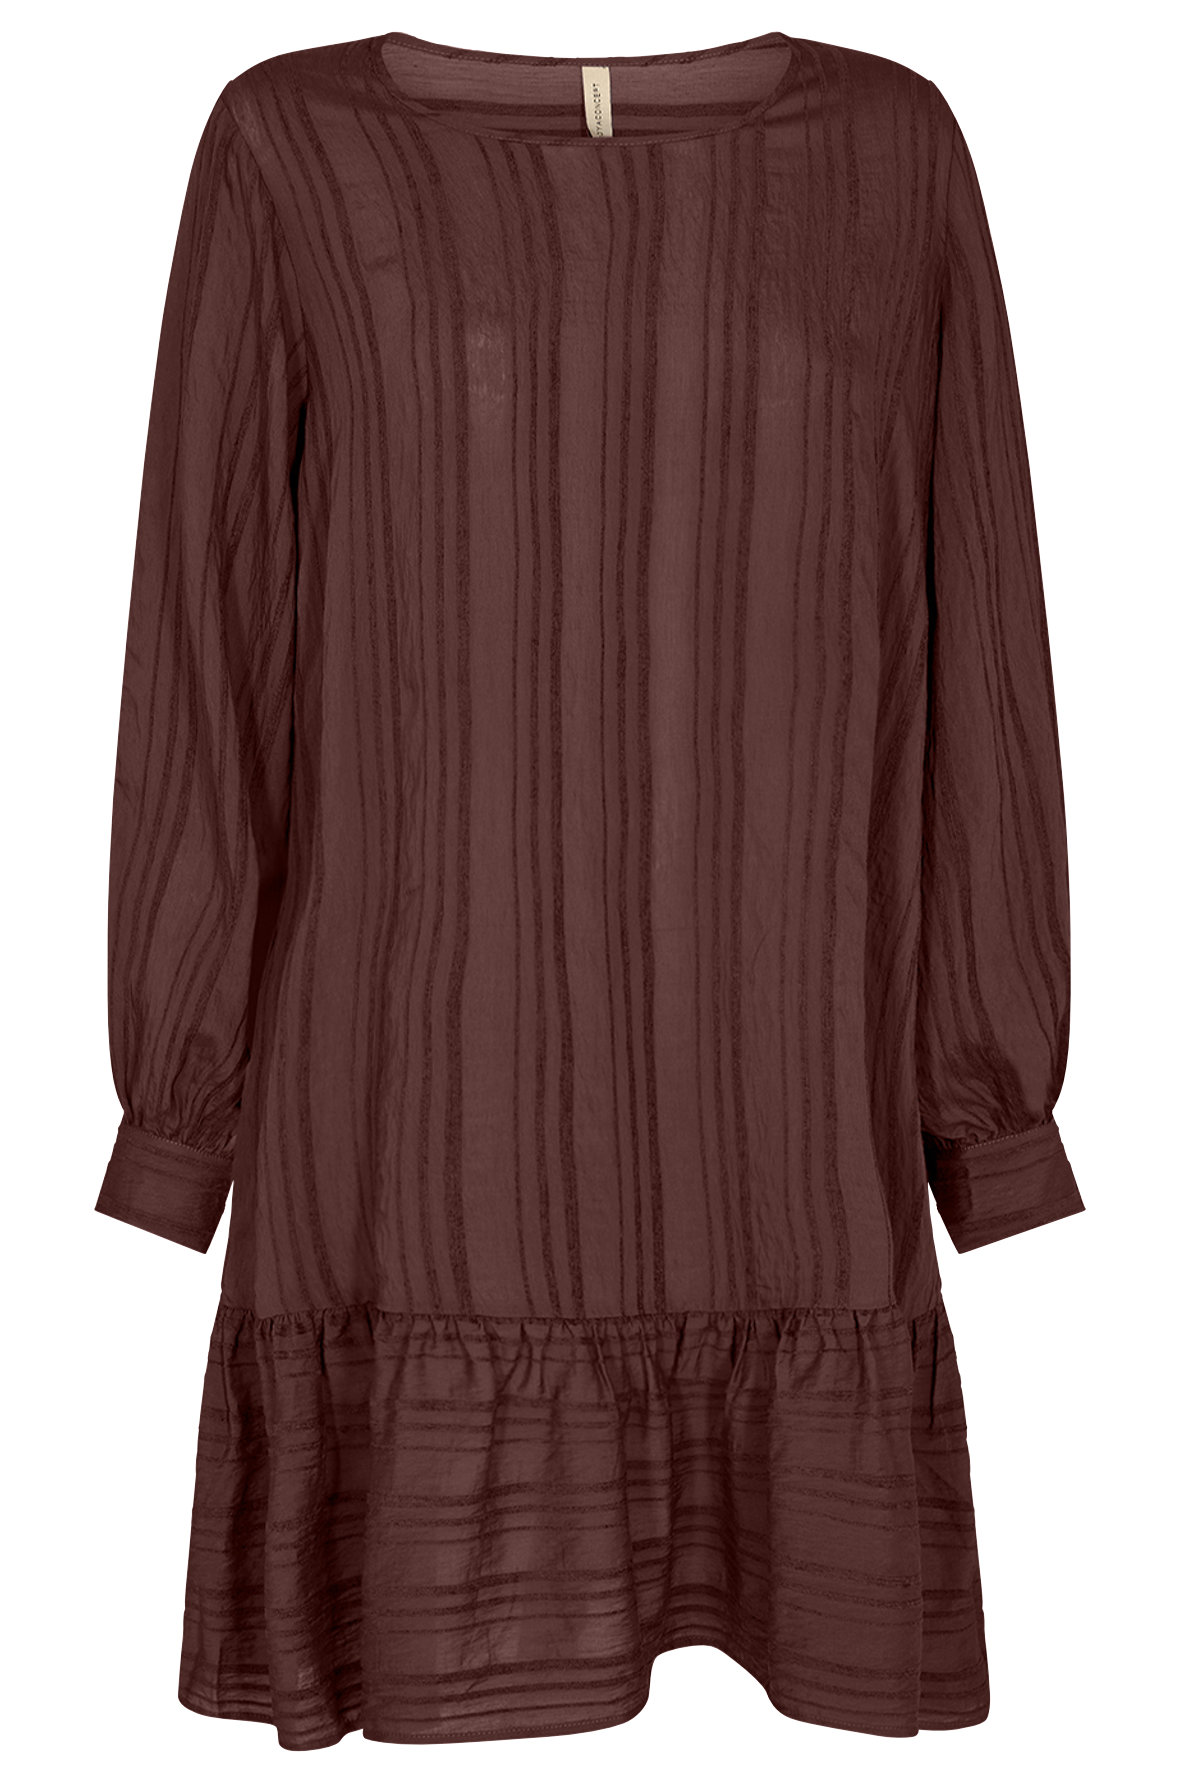 kompas madlavning klæde sig ud SoyaConcept sc-Desire 4 stribet kort casual kjole i mørkebrun - Hos Lohse